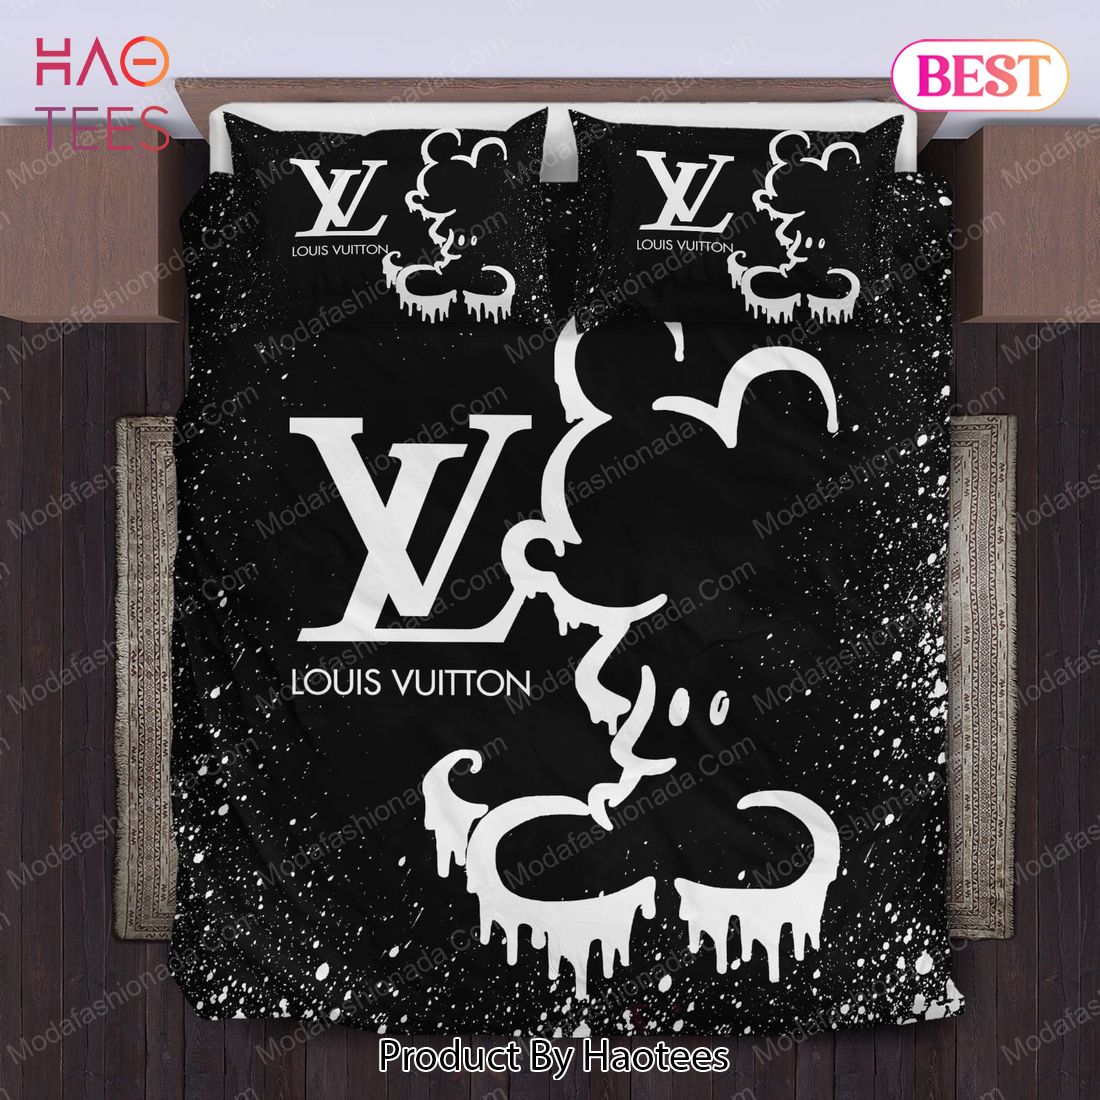 Buy Black And White Veinstone Louis Vuitton Bedding Sets Bed Sets, Bedroom  Sets, Comforter Sets, Duvet